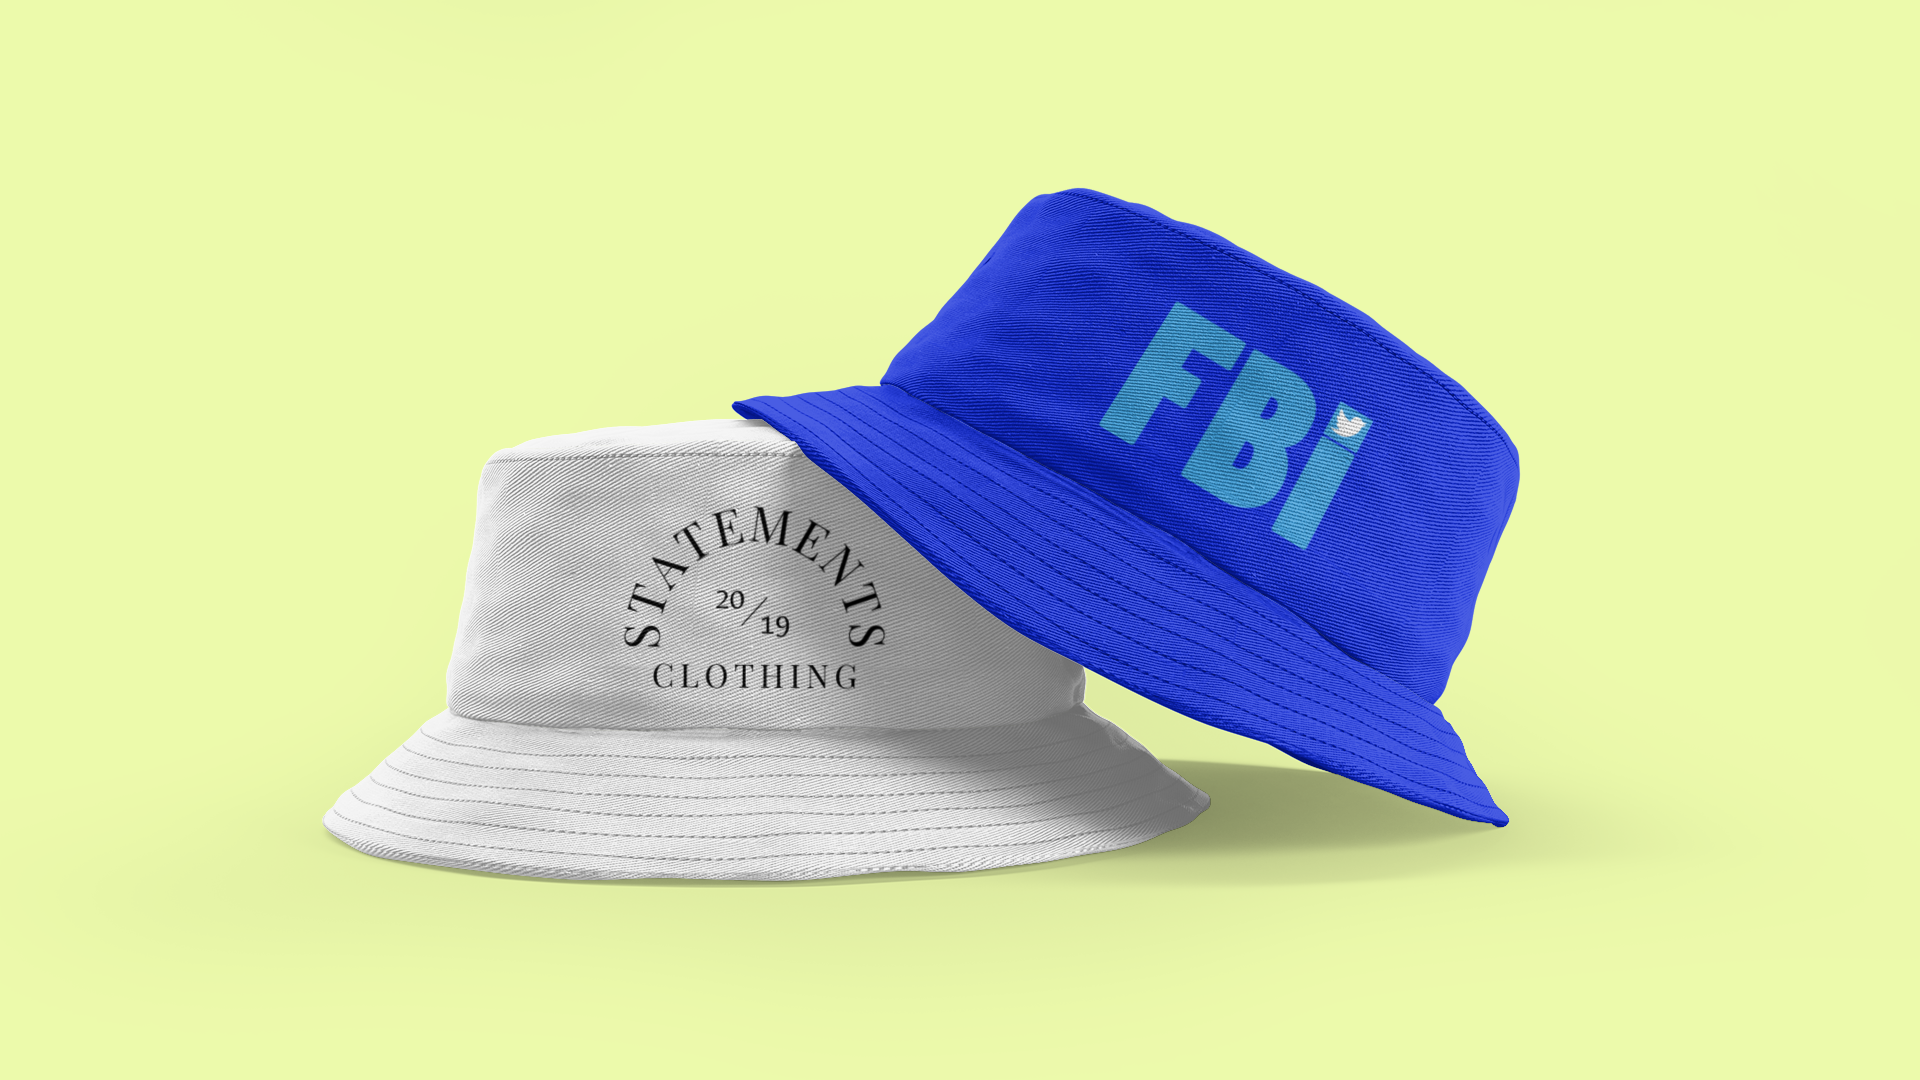 FBI Twitter Bucket Hat